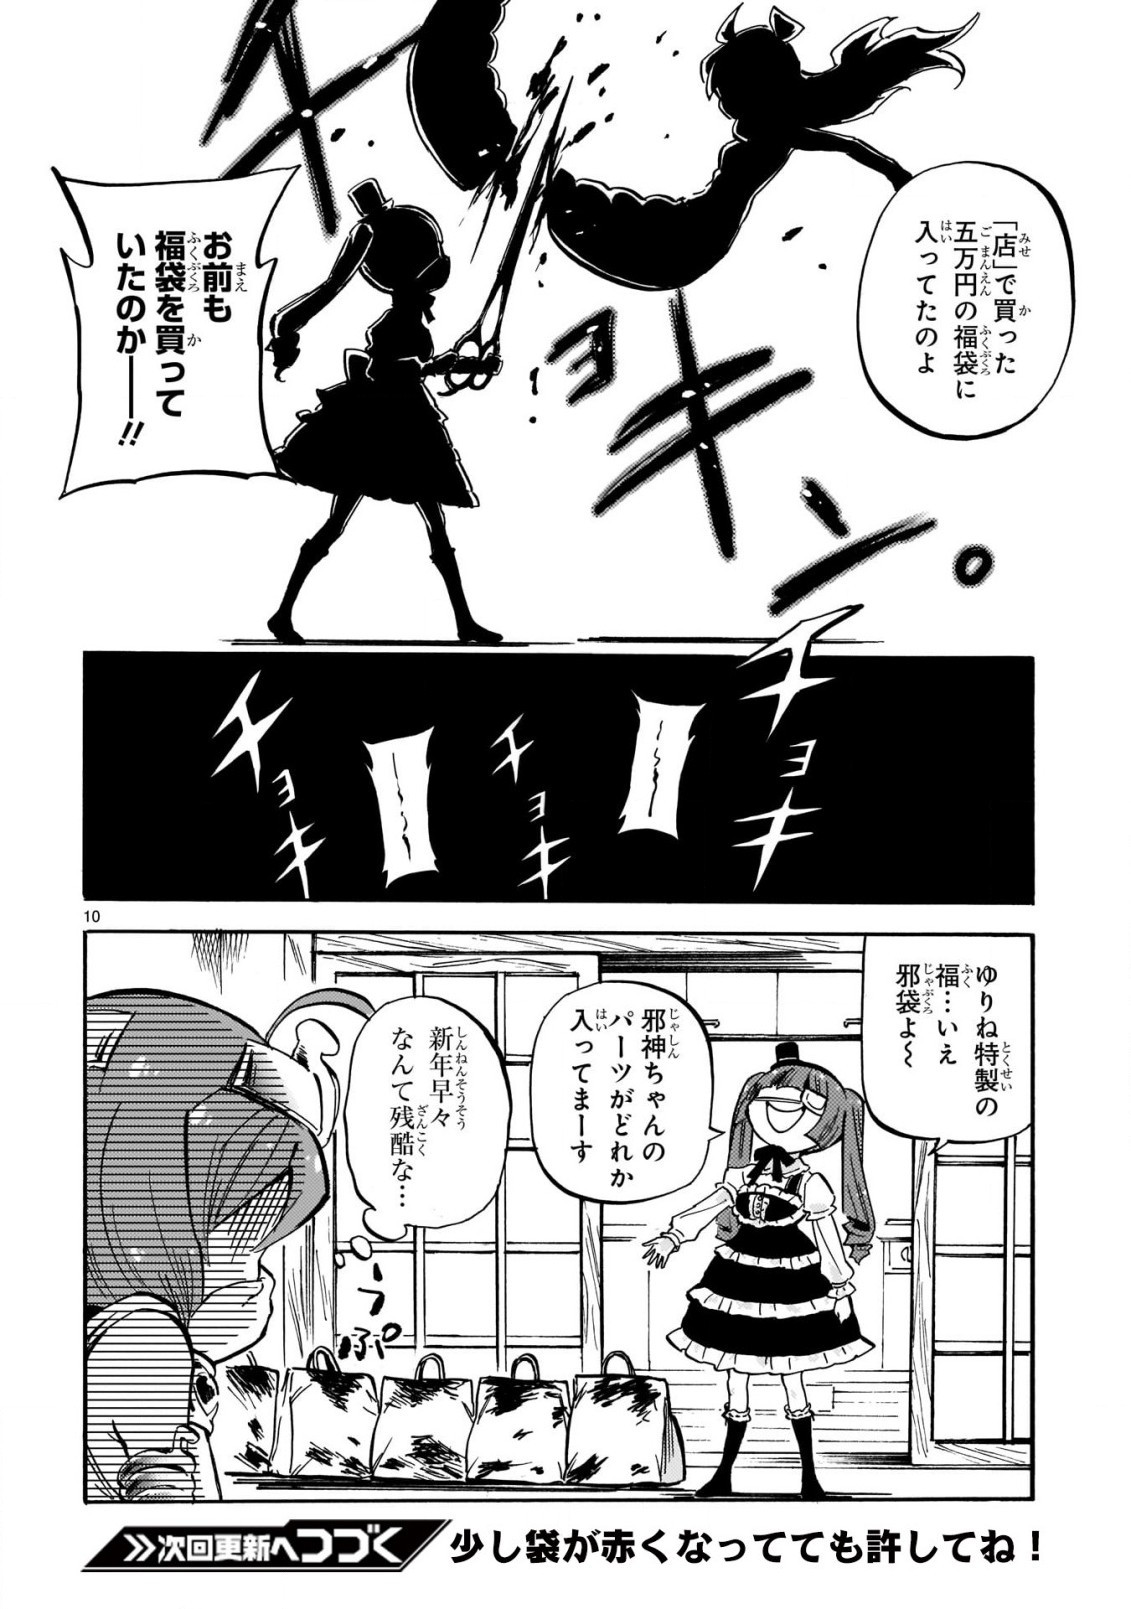 Jashin-chan Dropkick - Chapter 206 - Page 10